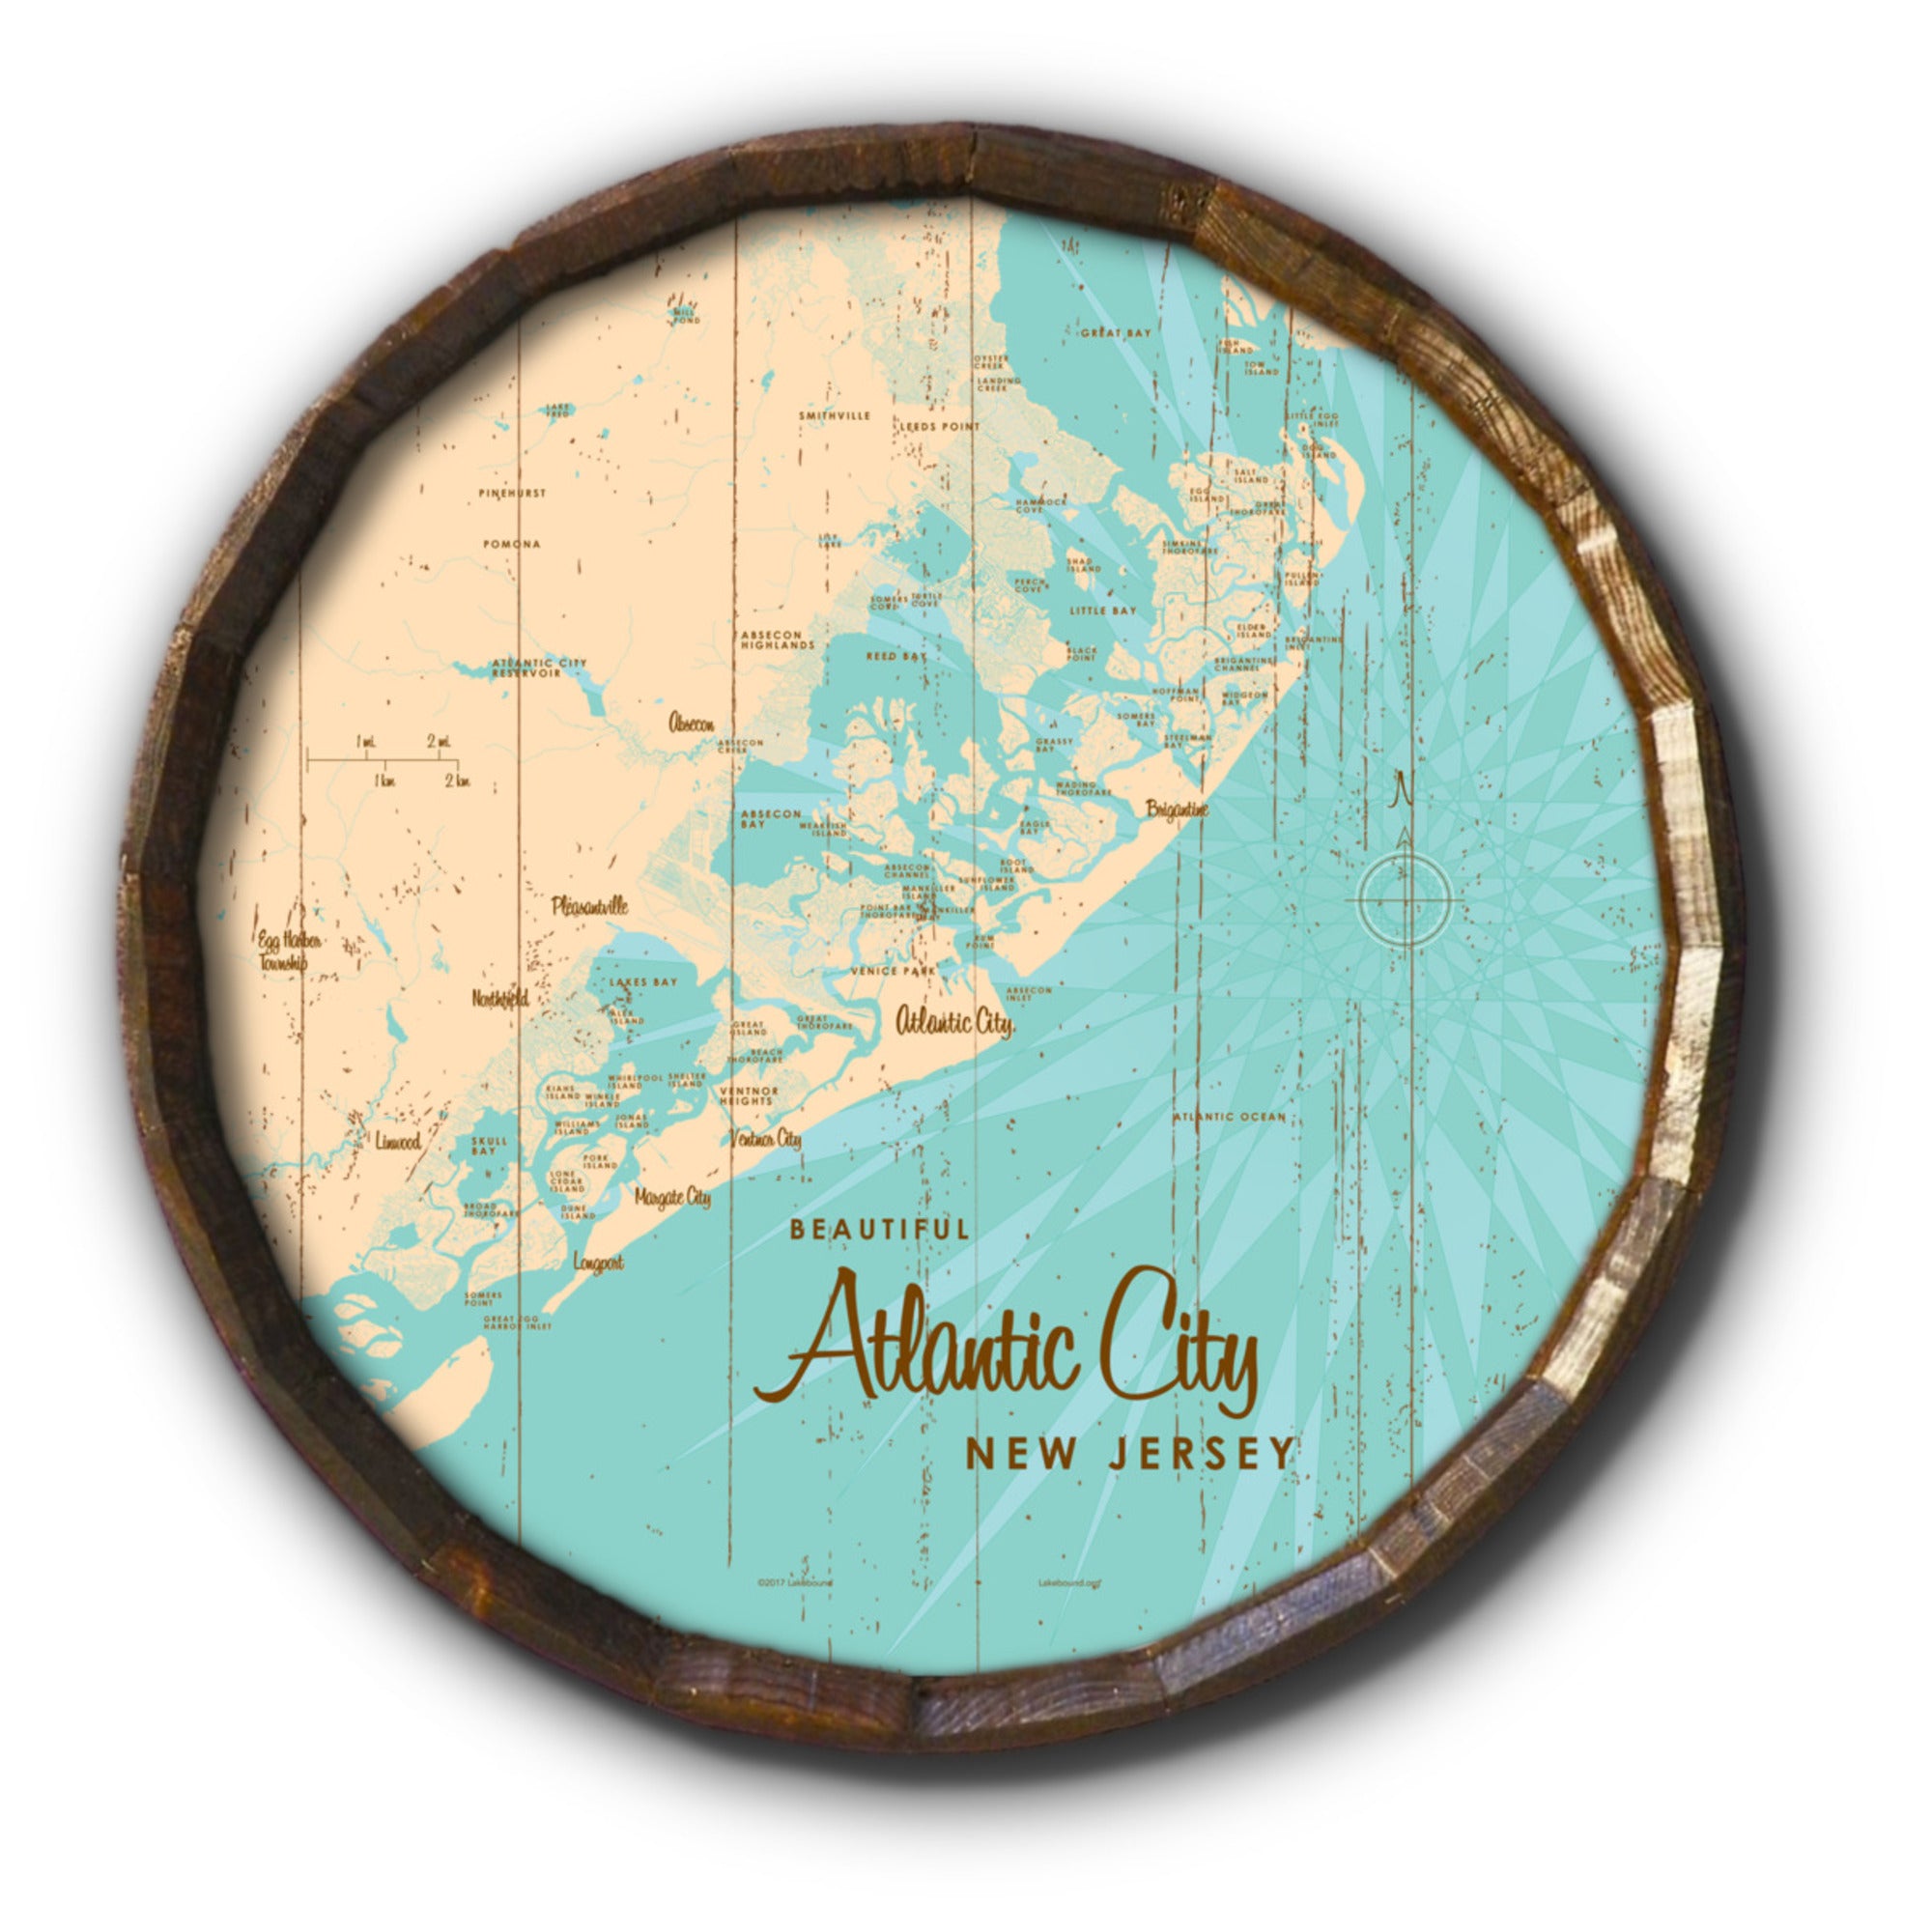 Atlantic City New Jersey, Rustic Barrel End Map Art